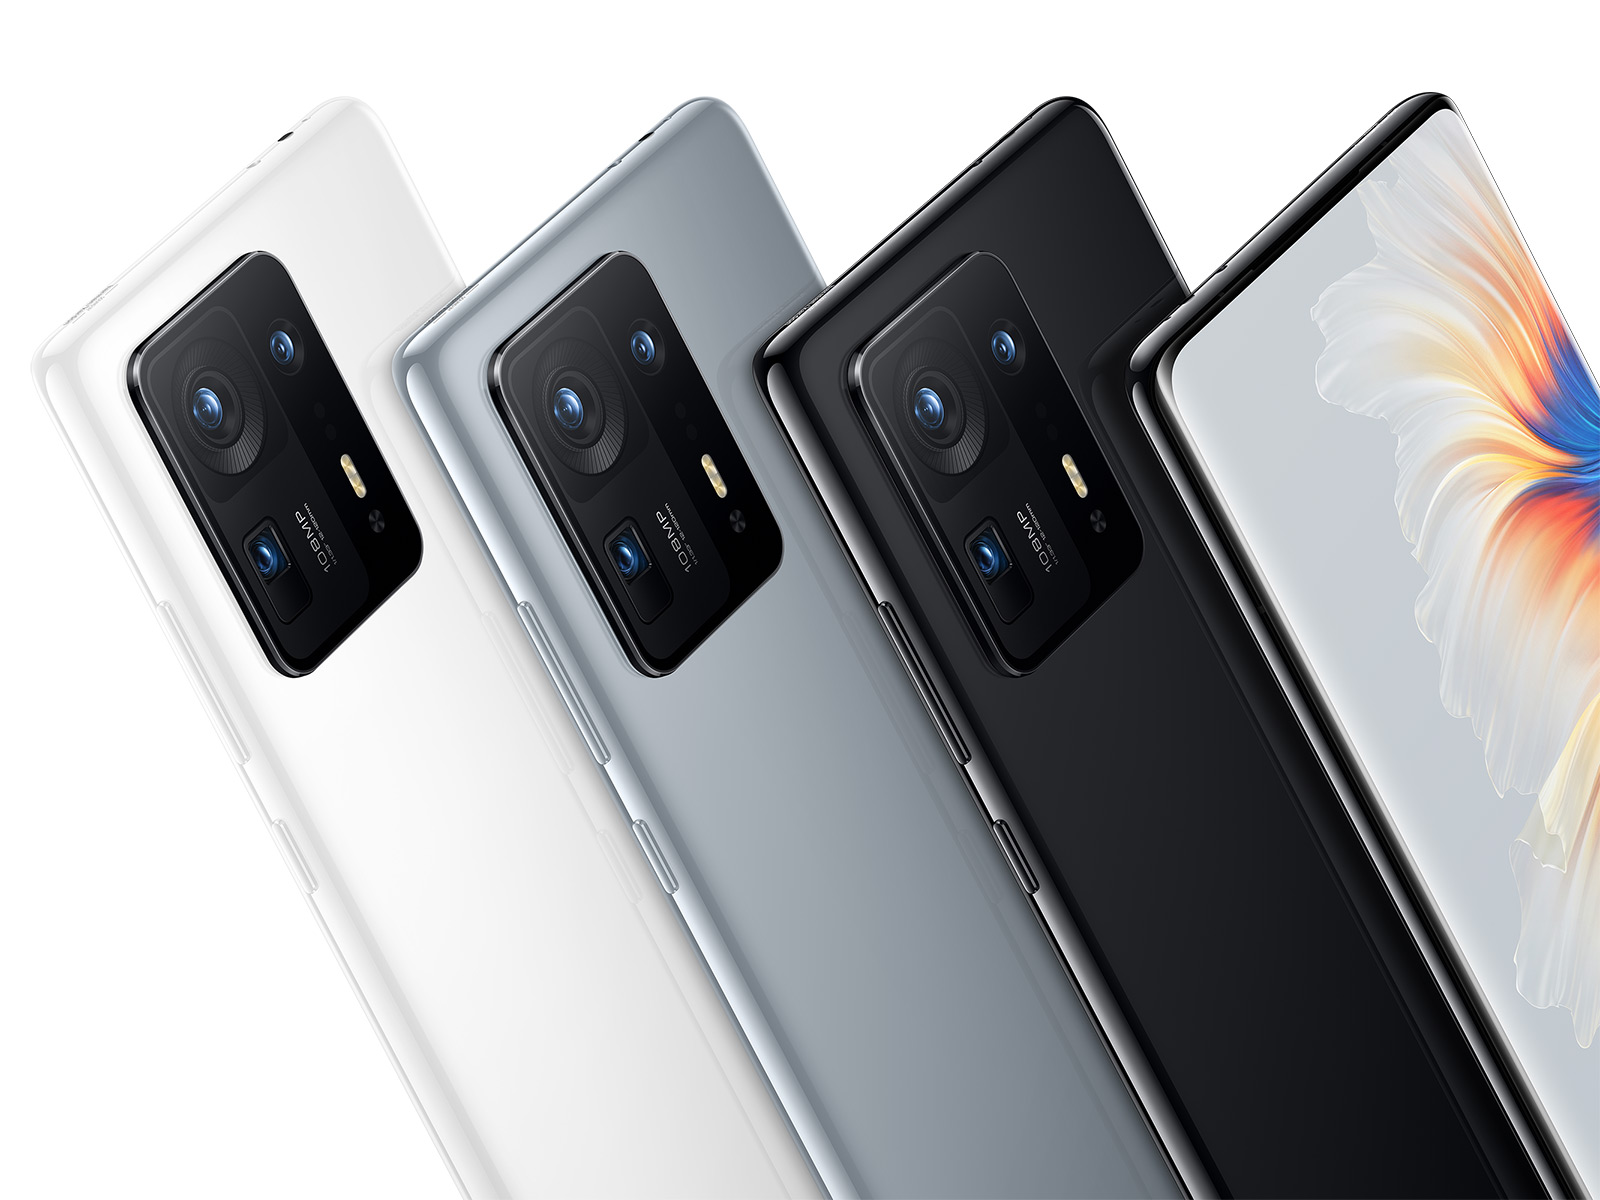 Prawie jak składany smartfon: Mi Mix 4 stał się jednym z najdroższych gadżetów Xiaomi pod względem kosztów naprawy